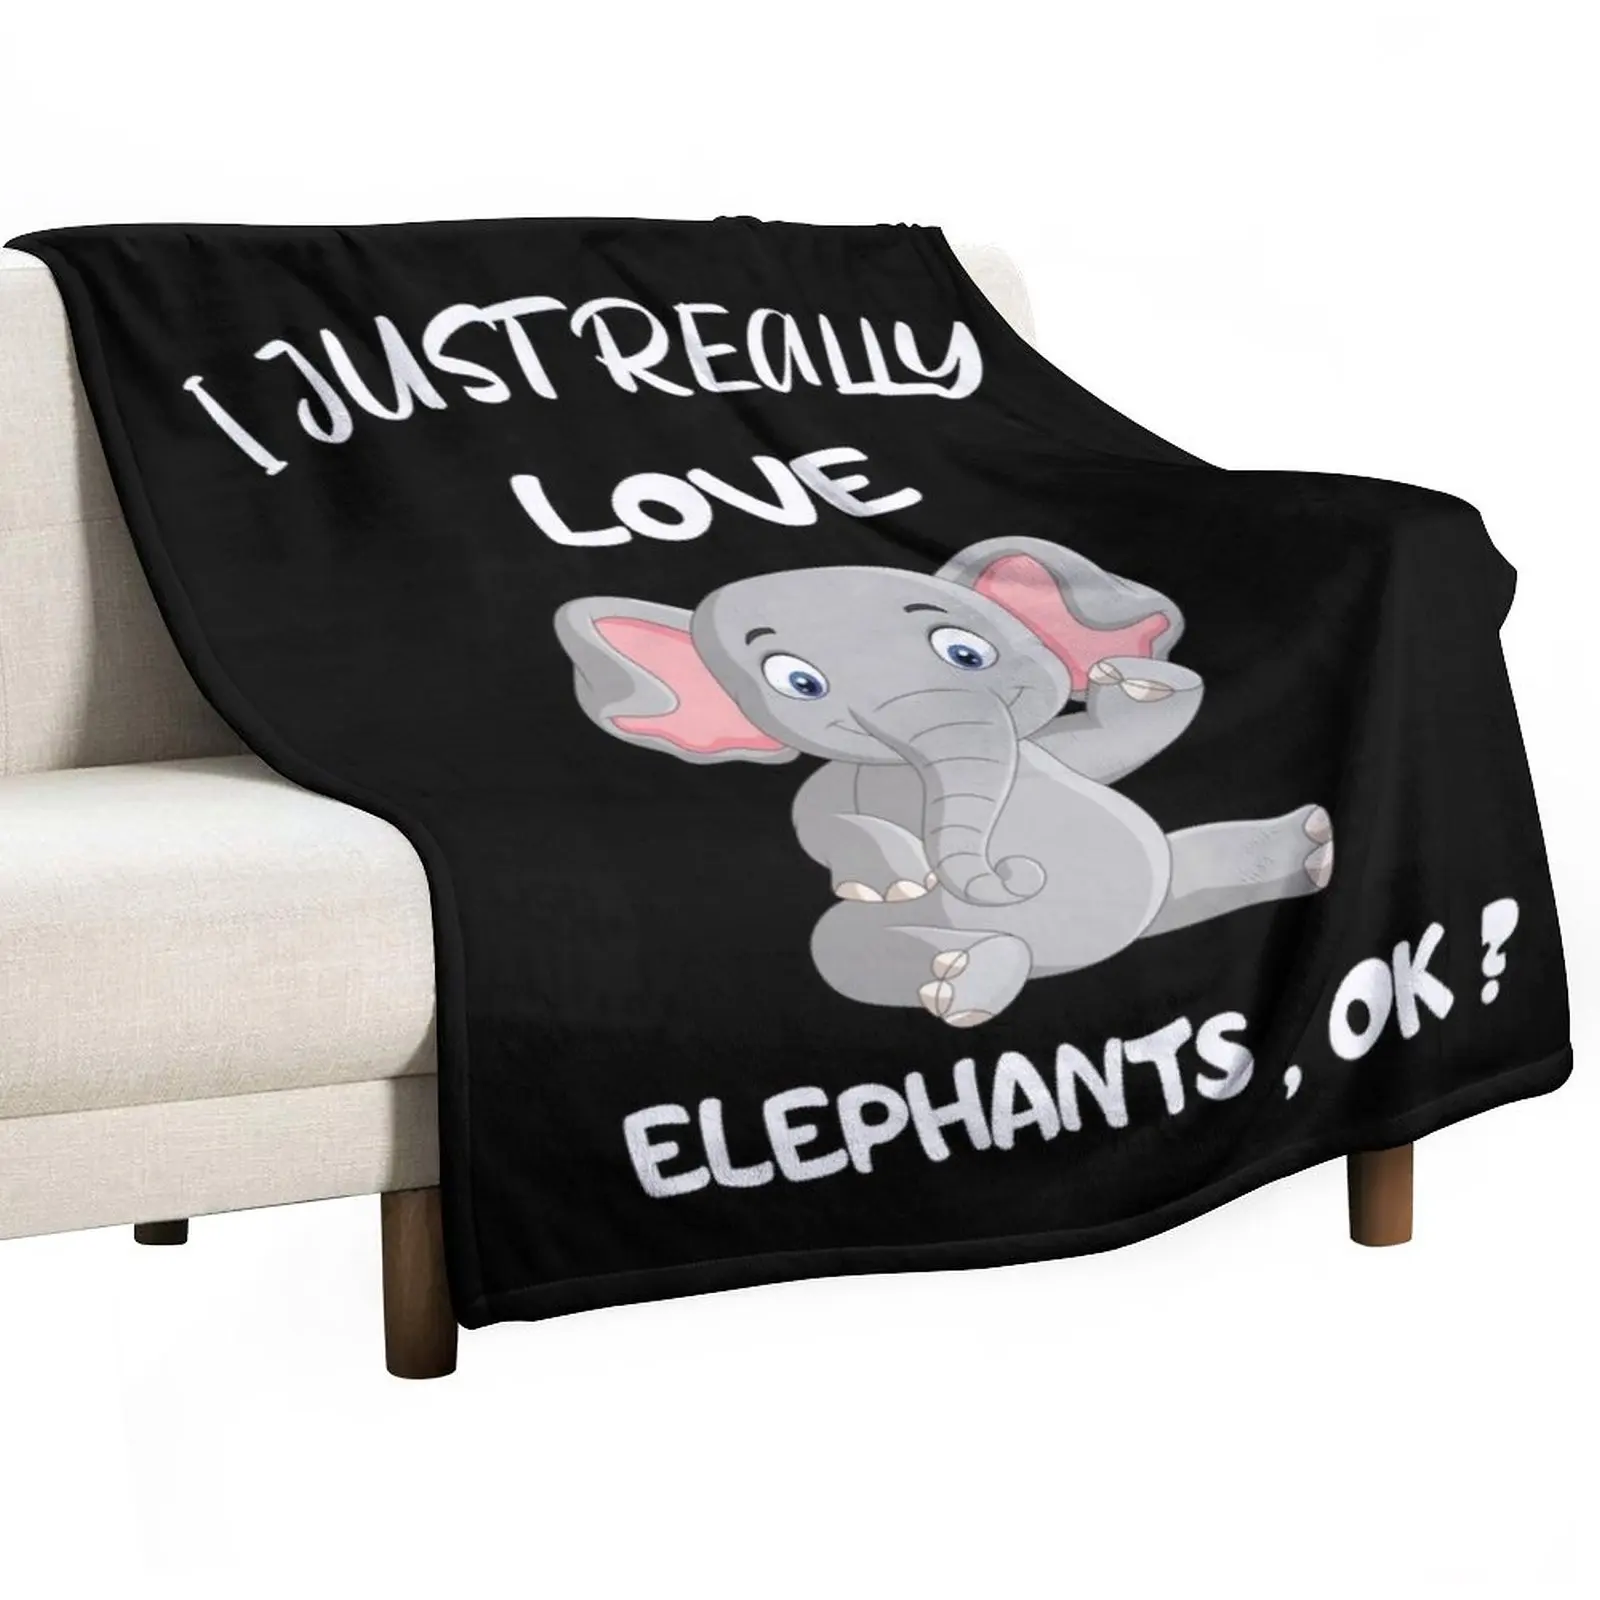 

I Just Really Love Elephants , Ok Throw Blanket Blankets For Sofas Luxury Designer Blanket